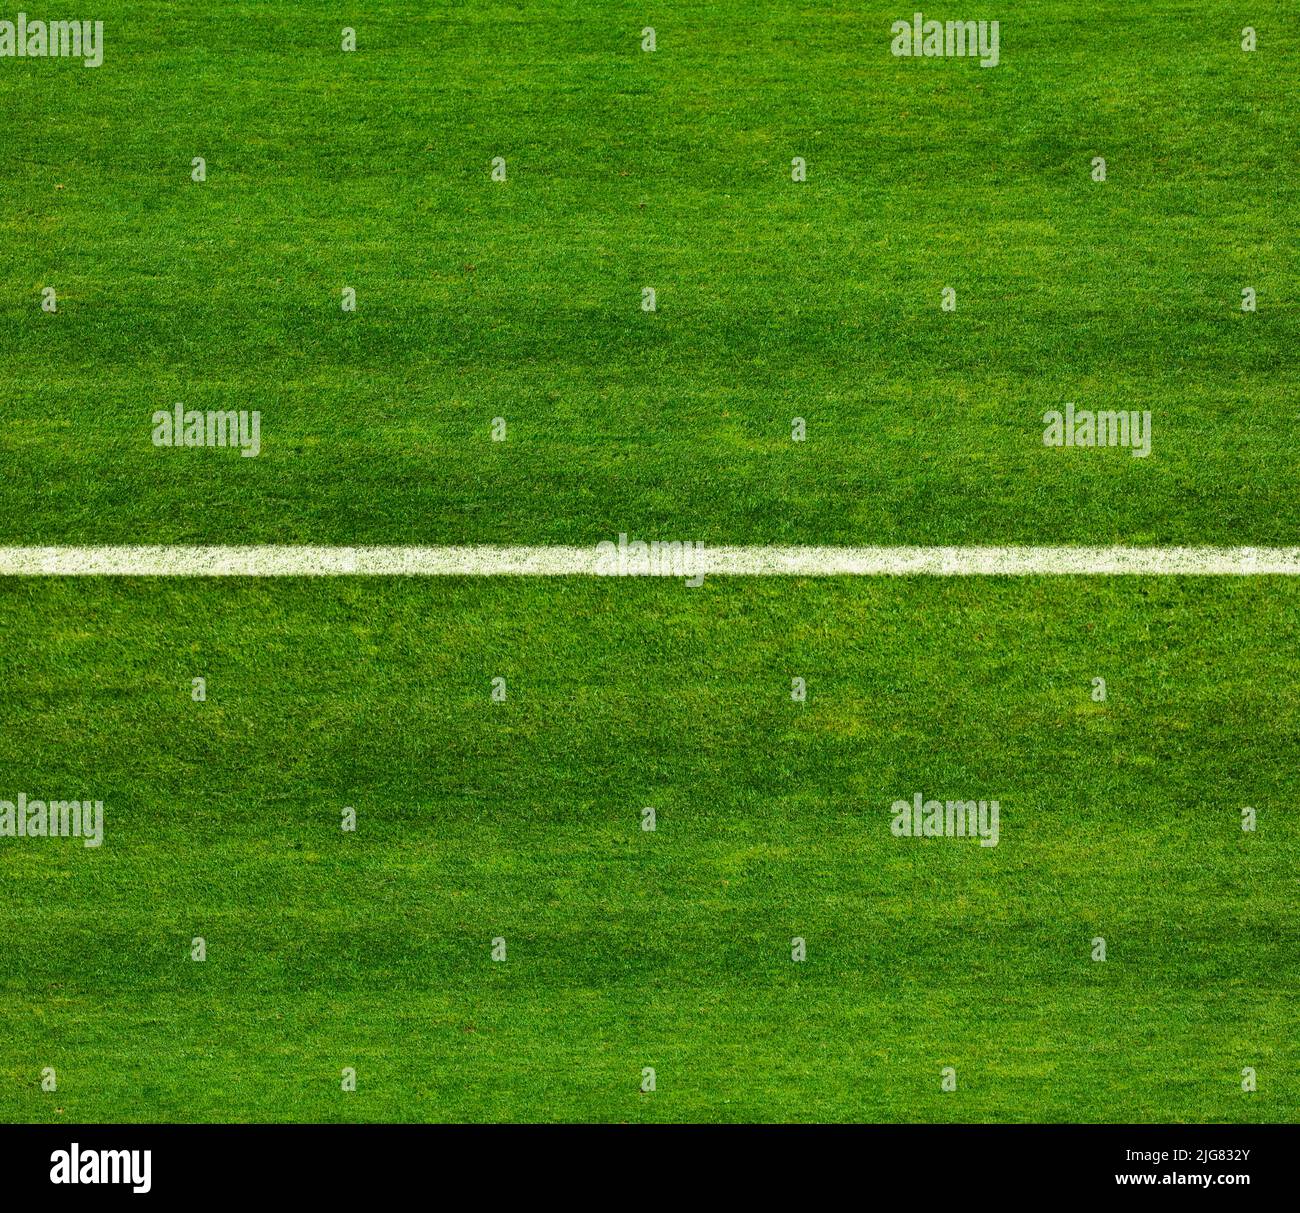 Línea en un campo de fútbol fotografiado desde arriba Foto de stock